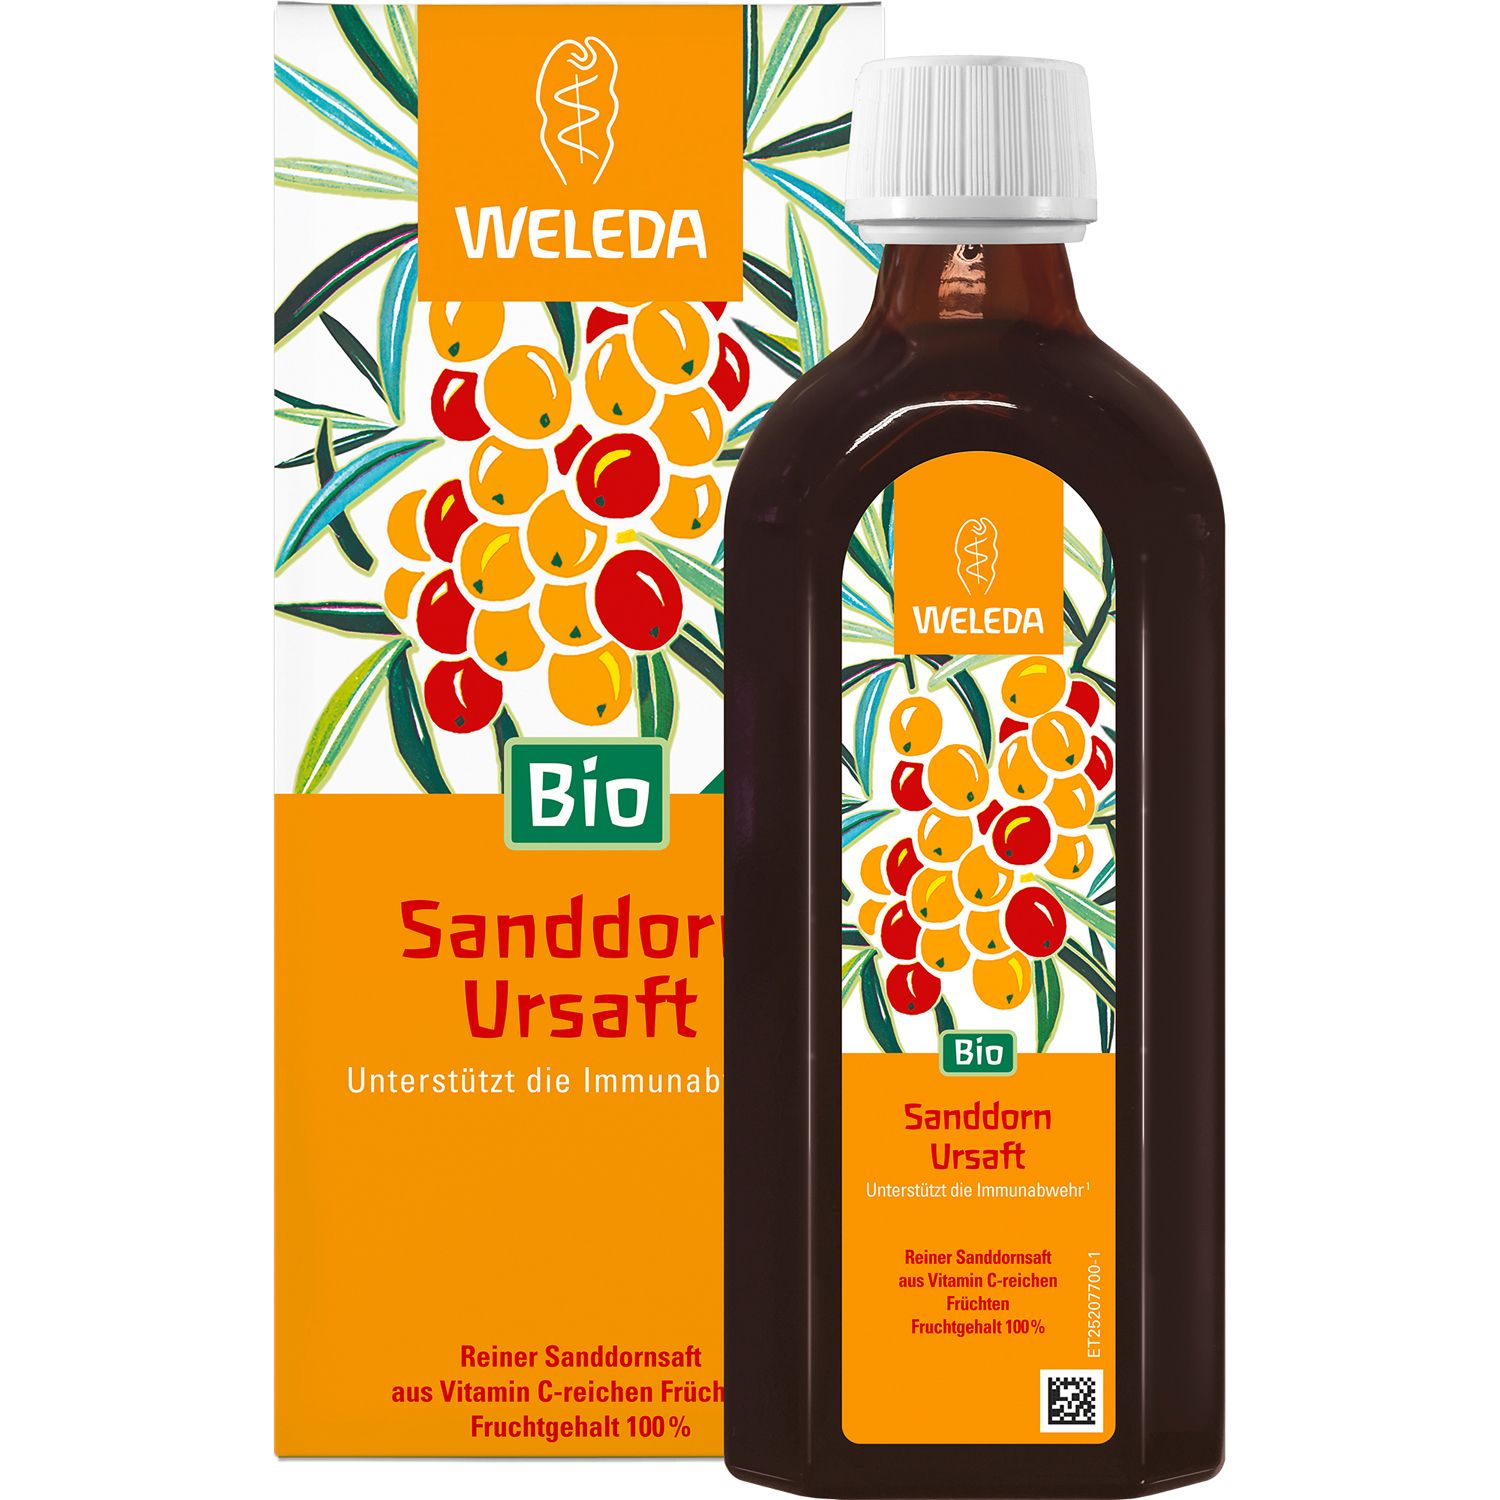 Weleda Sanddorn-Ursaft Bio- reiner Sanddornsaft mit 100% Fruchtgehalt, unterstützt die Immunabwehr